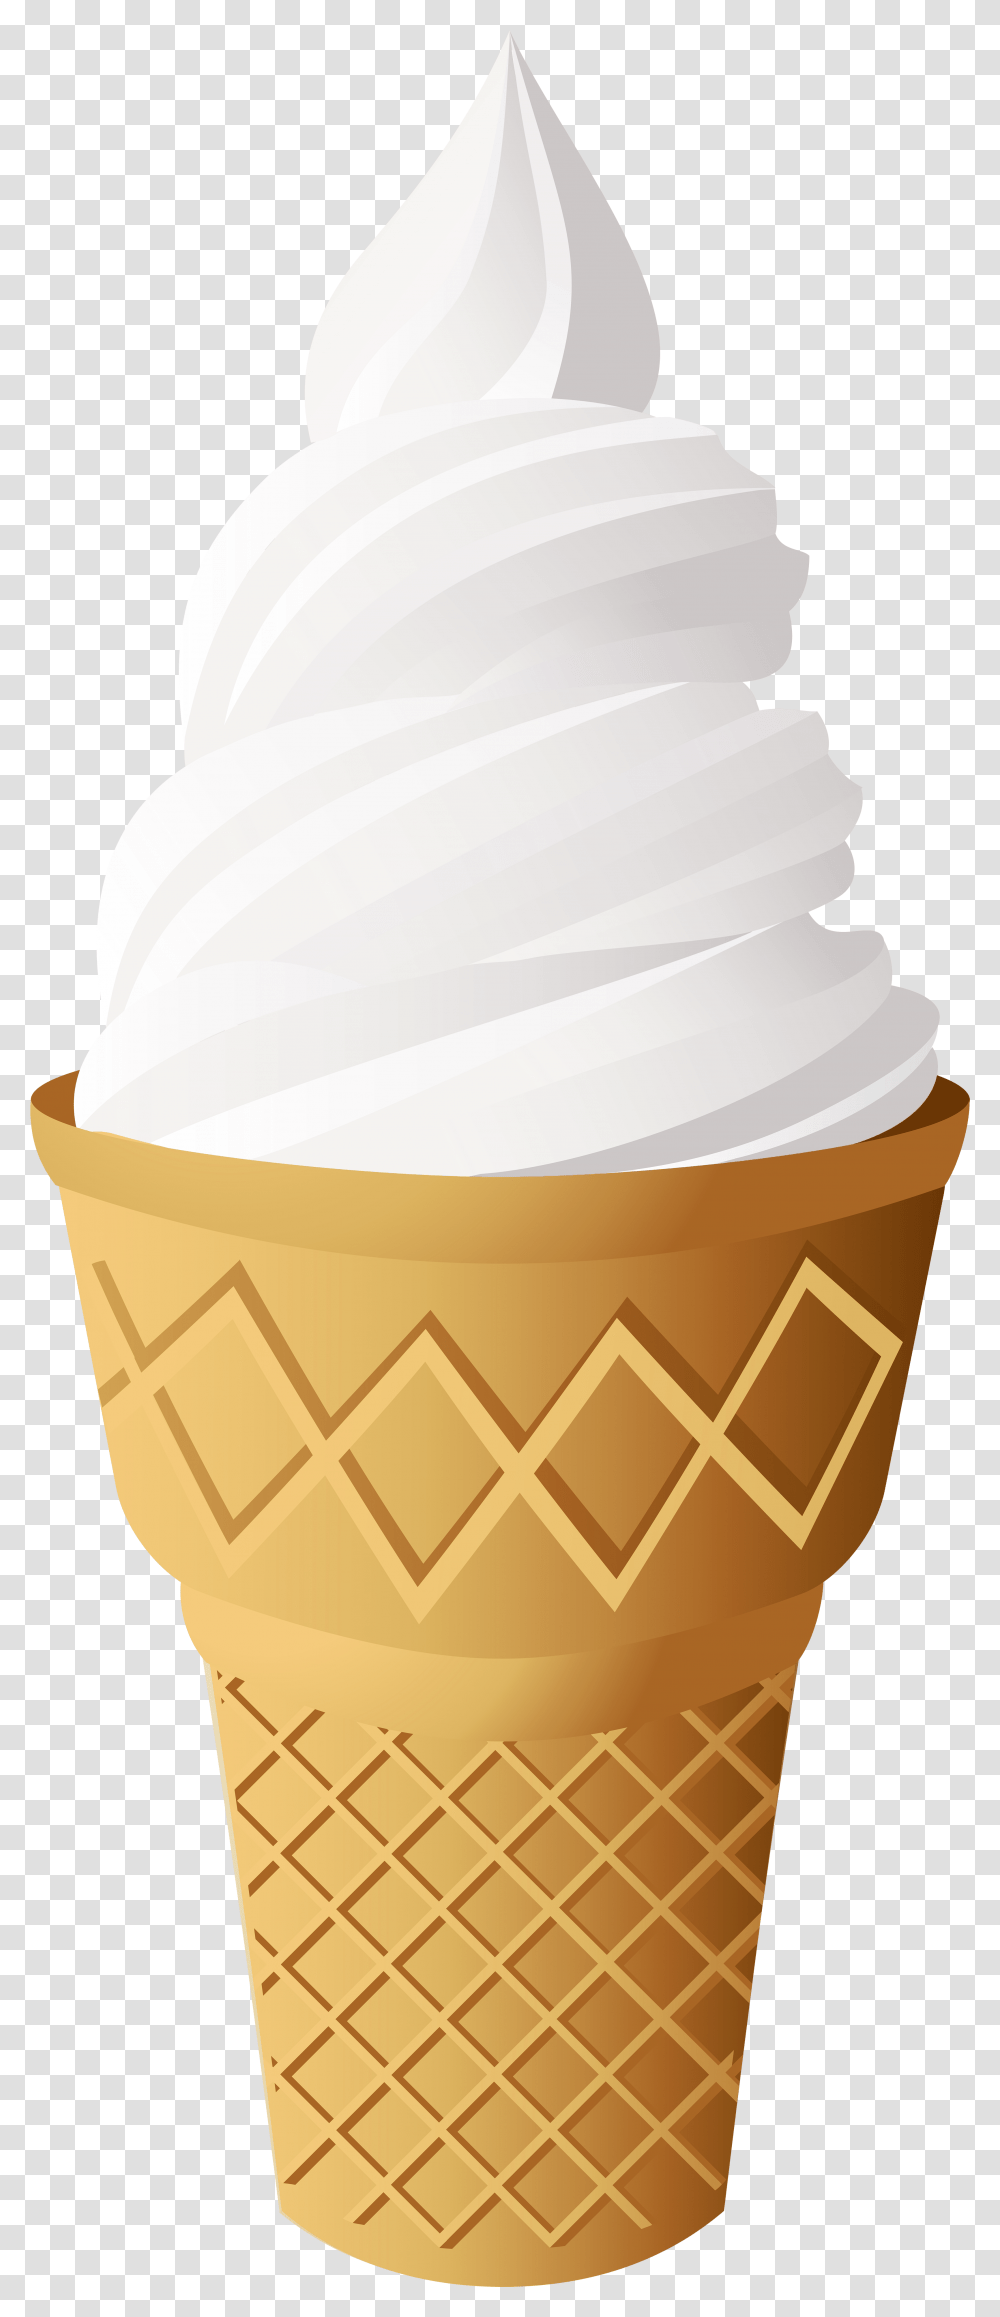 Vanilla Ice Cream Cone Clip Art Ice Cream Illustration Tutorial, Dessert, Food, Creme, Wedding Cake Transparent Png